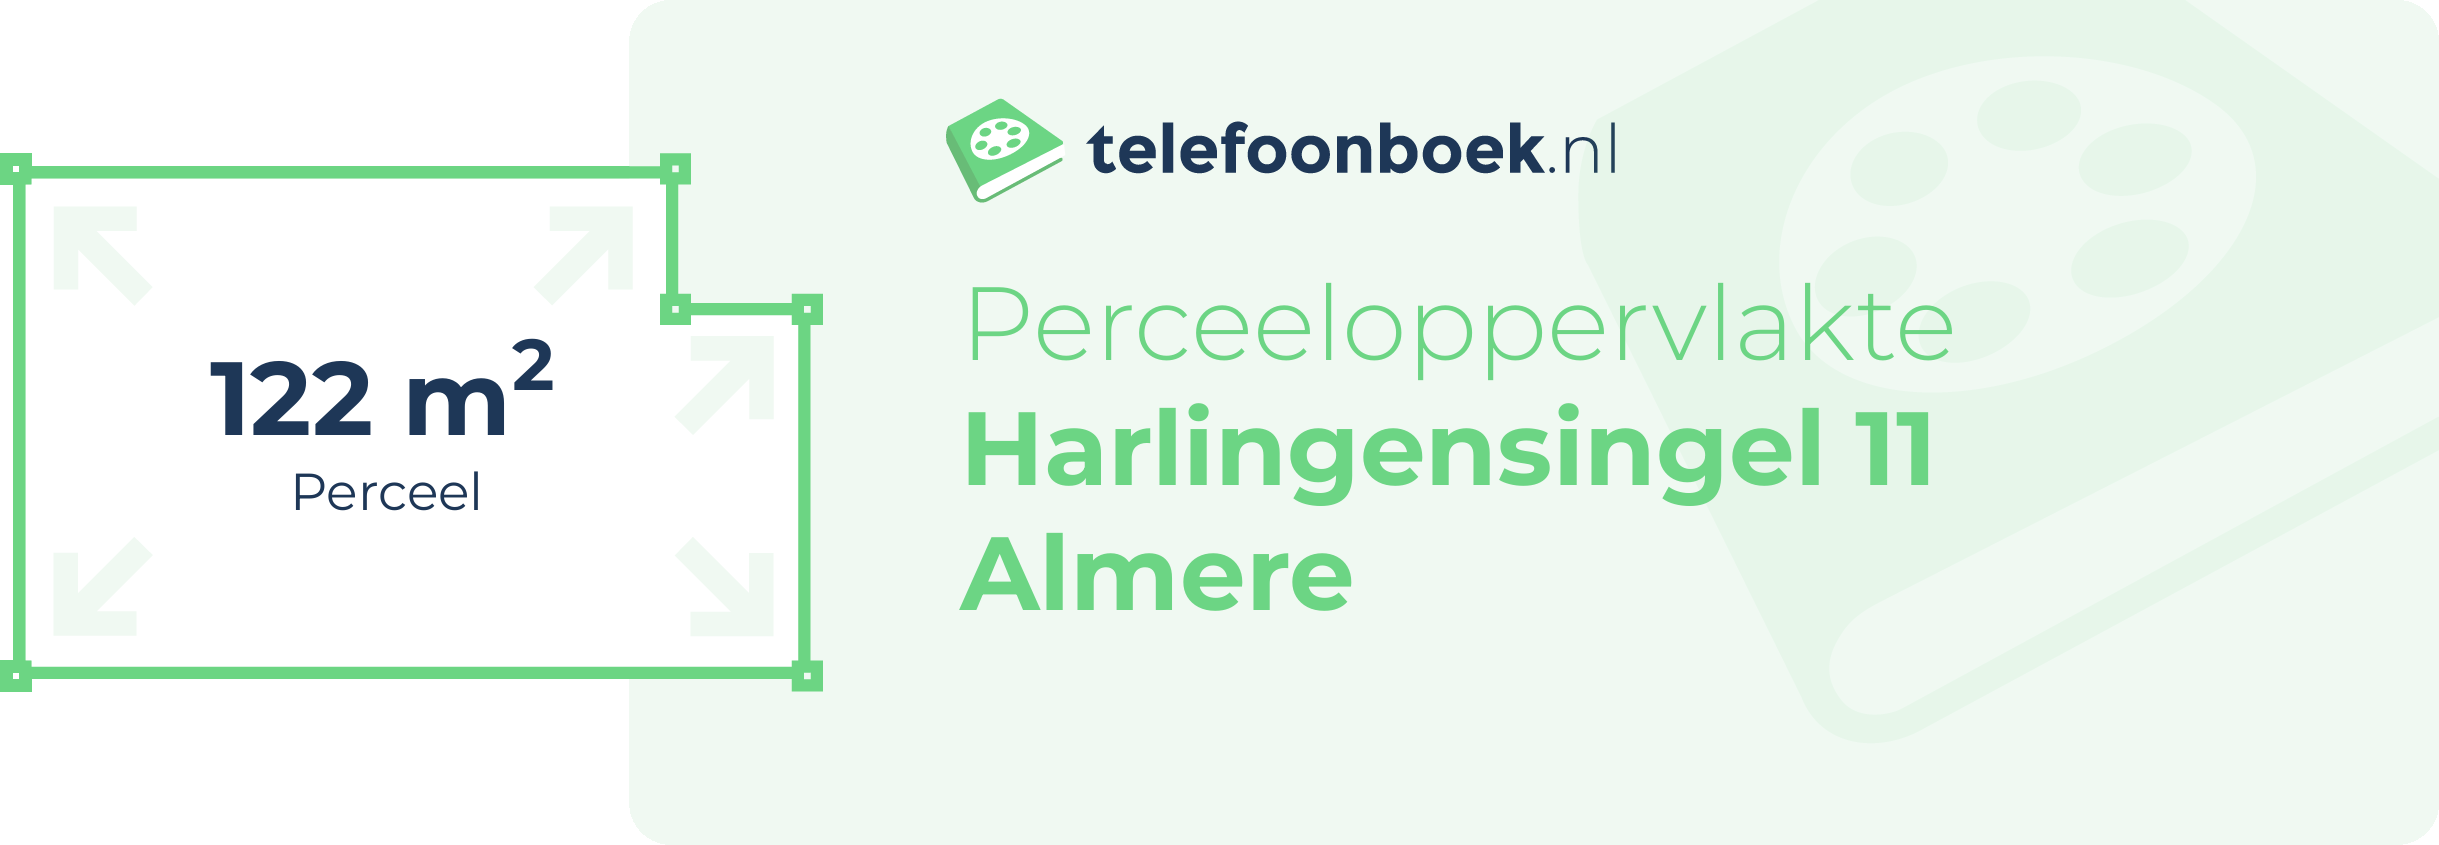 Perceeloppervlakte Harlingensingel 11 Almere